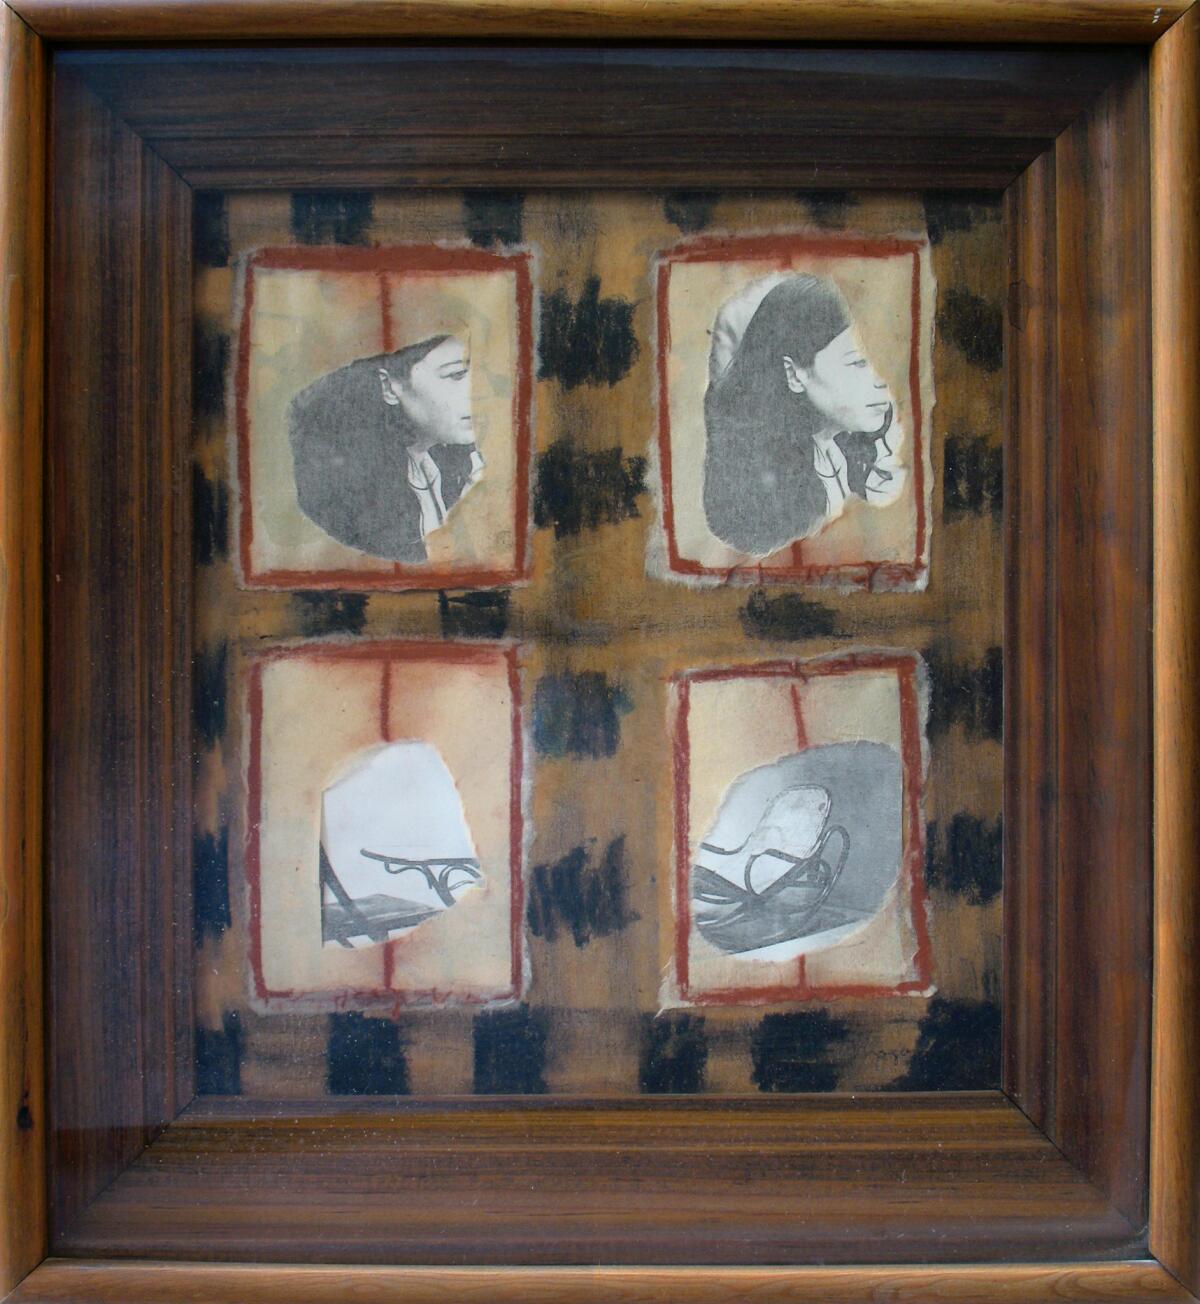 "Ventanas," [Windows], 1977-78, by Magali Lara. (Acervo Museo de Arte Moderno / INBA, Mexico City)